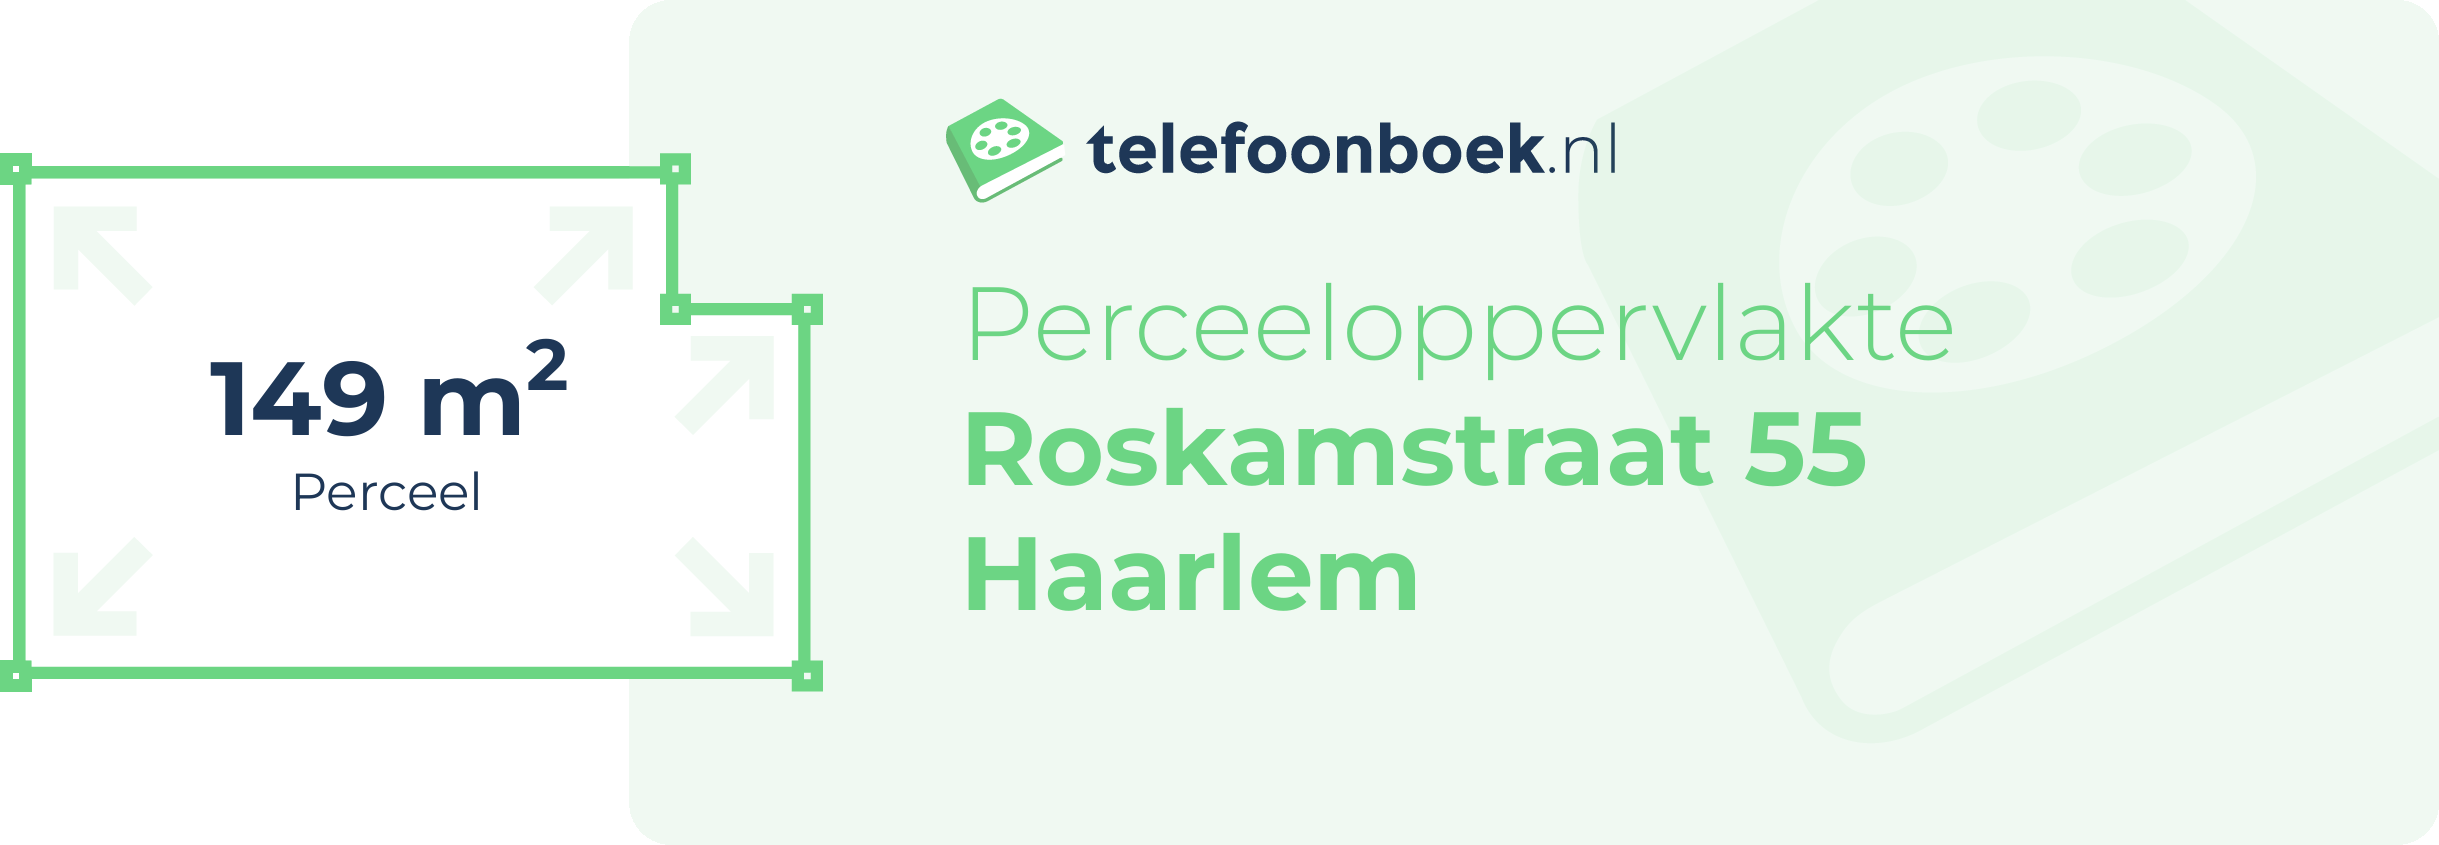 Perceeloppervlakte Roskamstraat 55 Haarlem